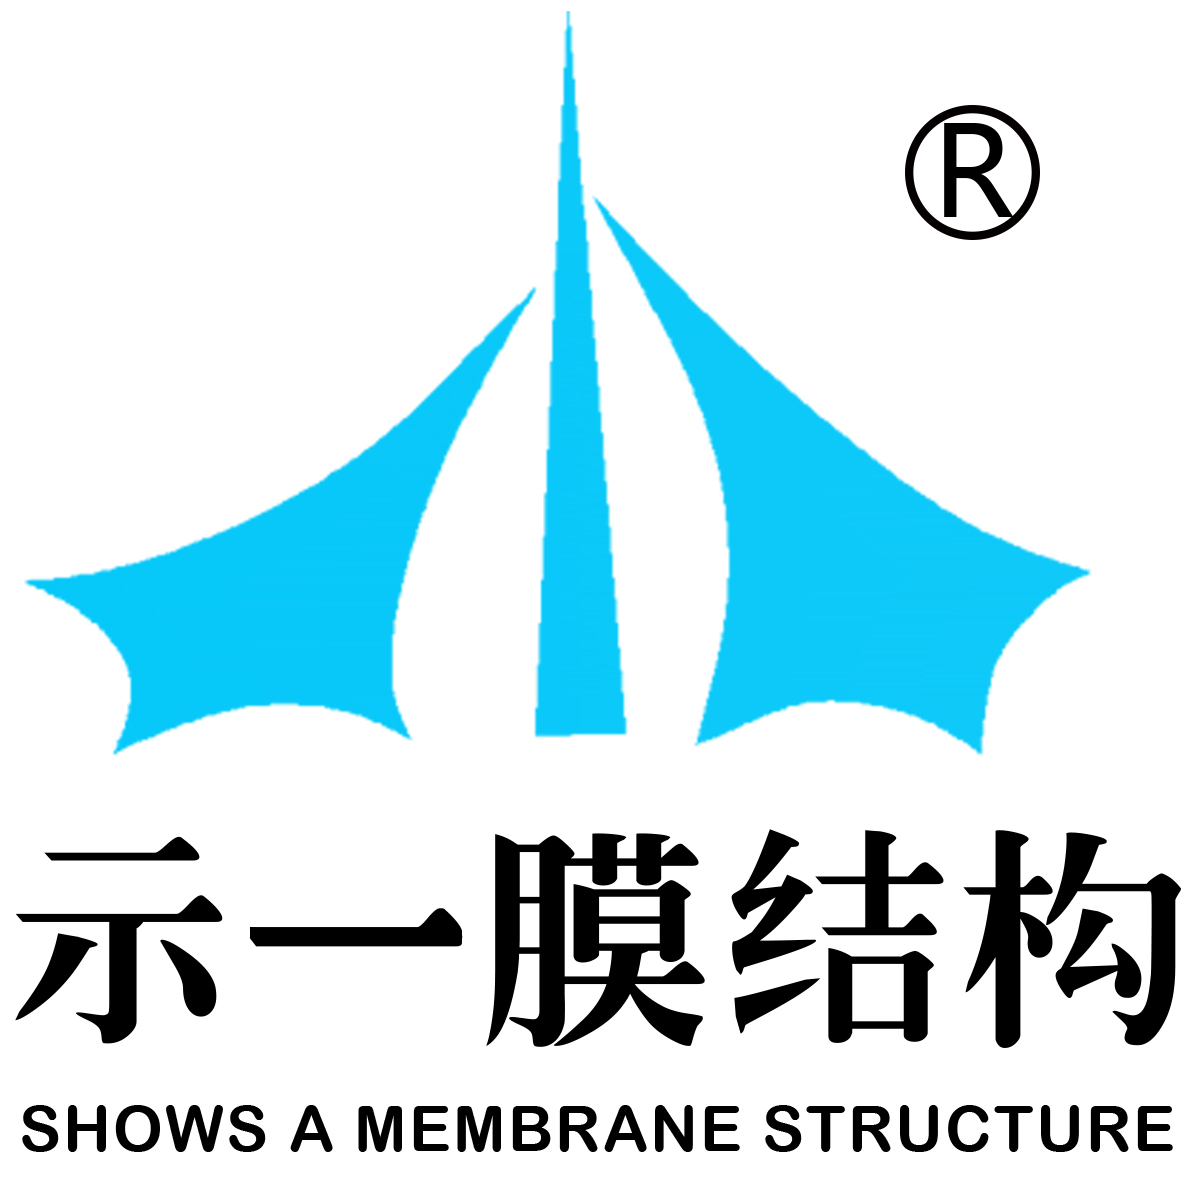 上海示一膜結構有限公司